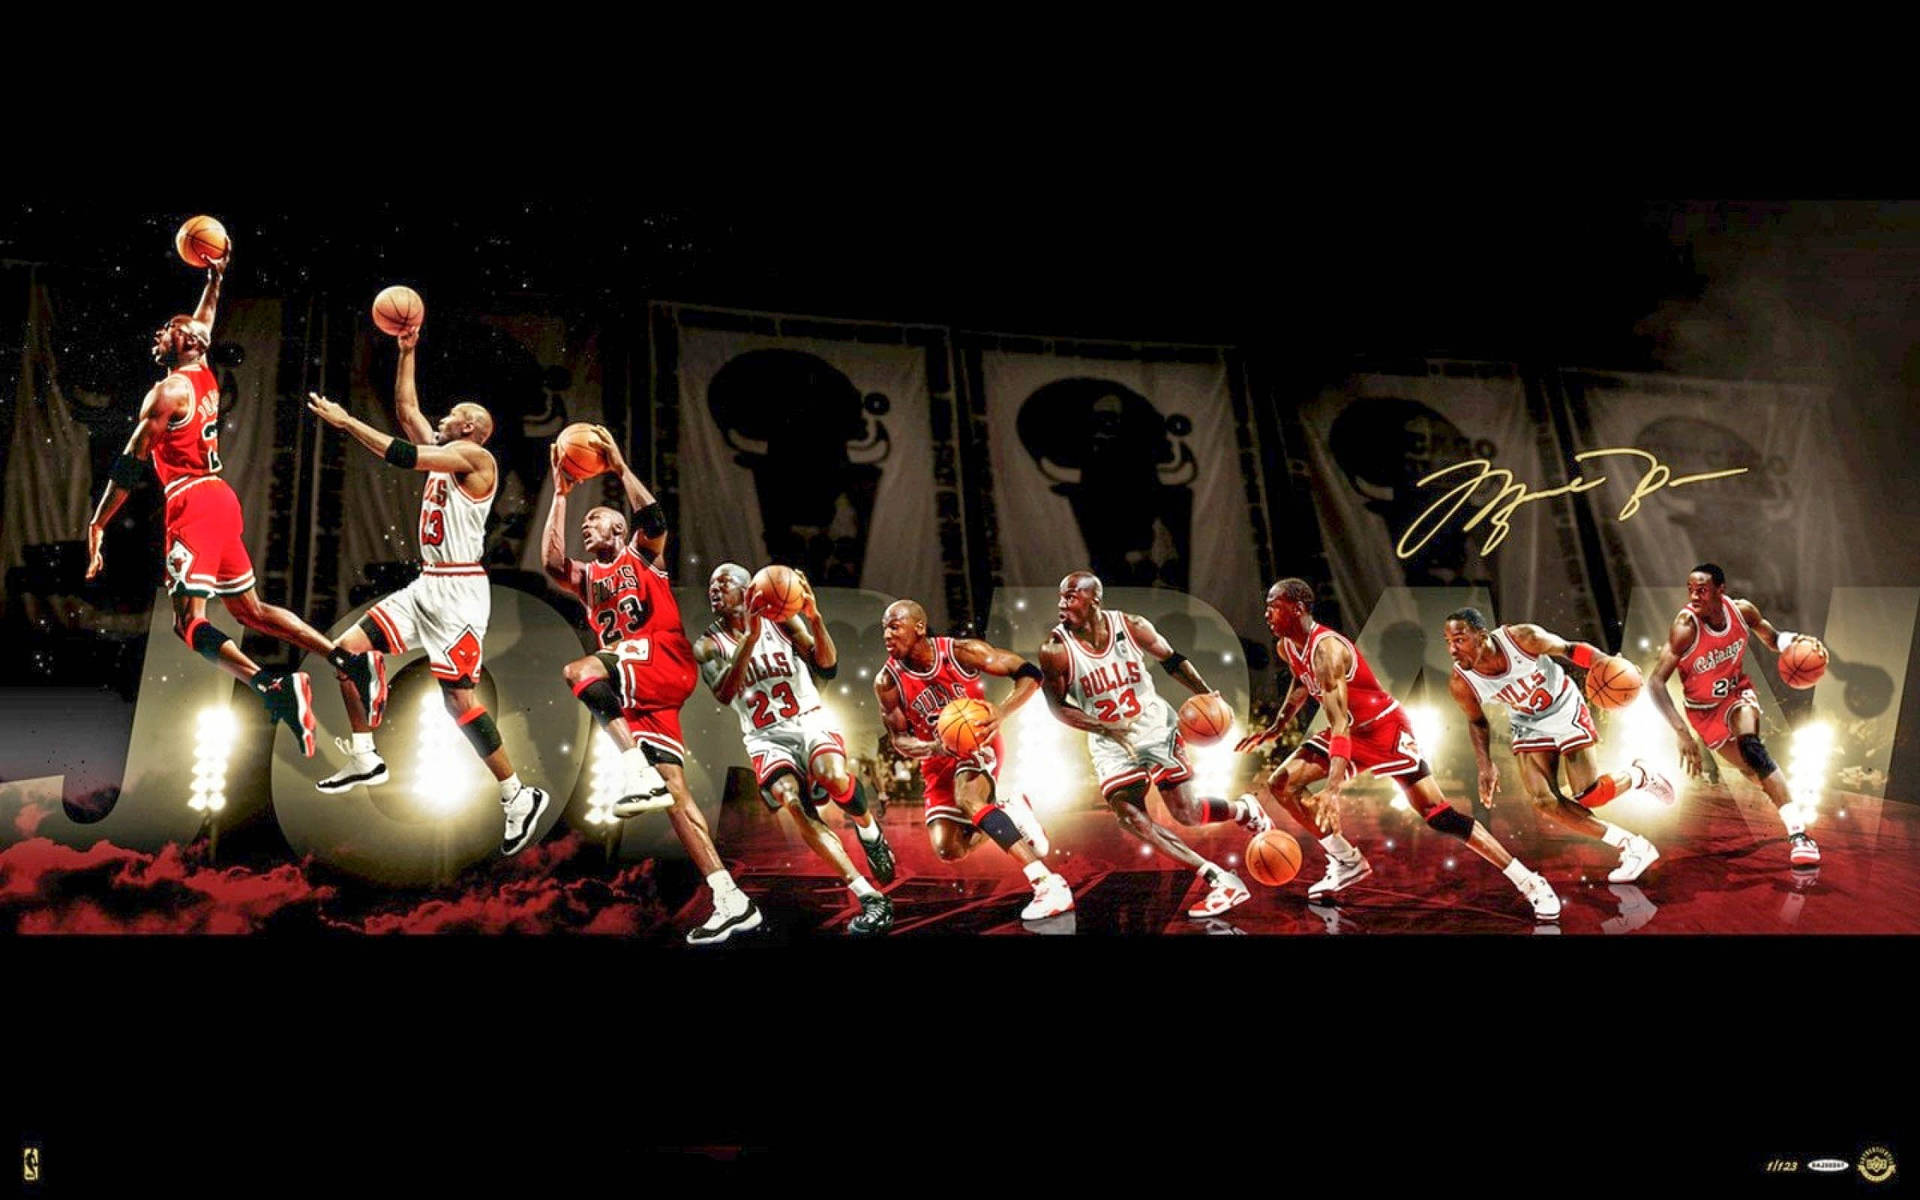 Michael Jordan Shines in the NBA Wallpaper